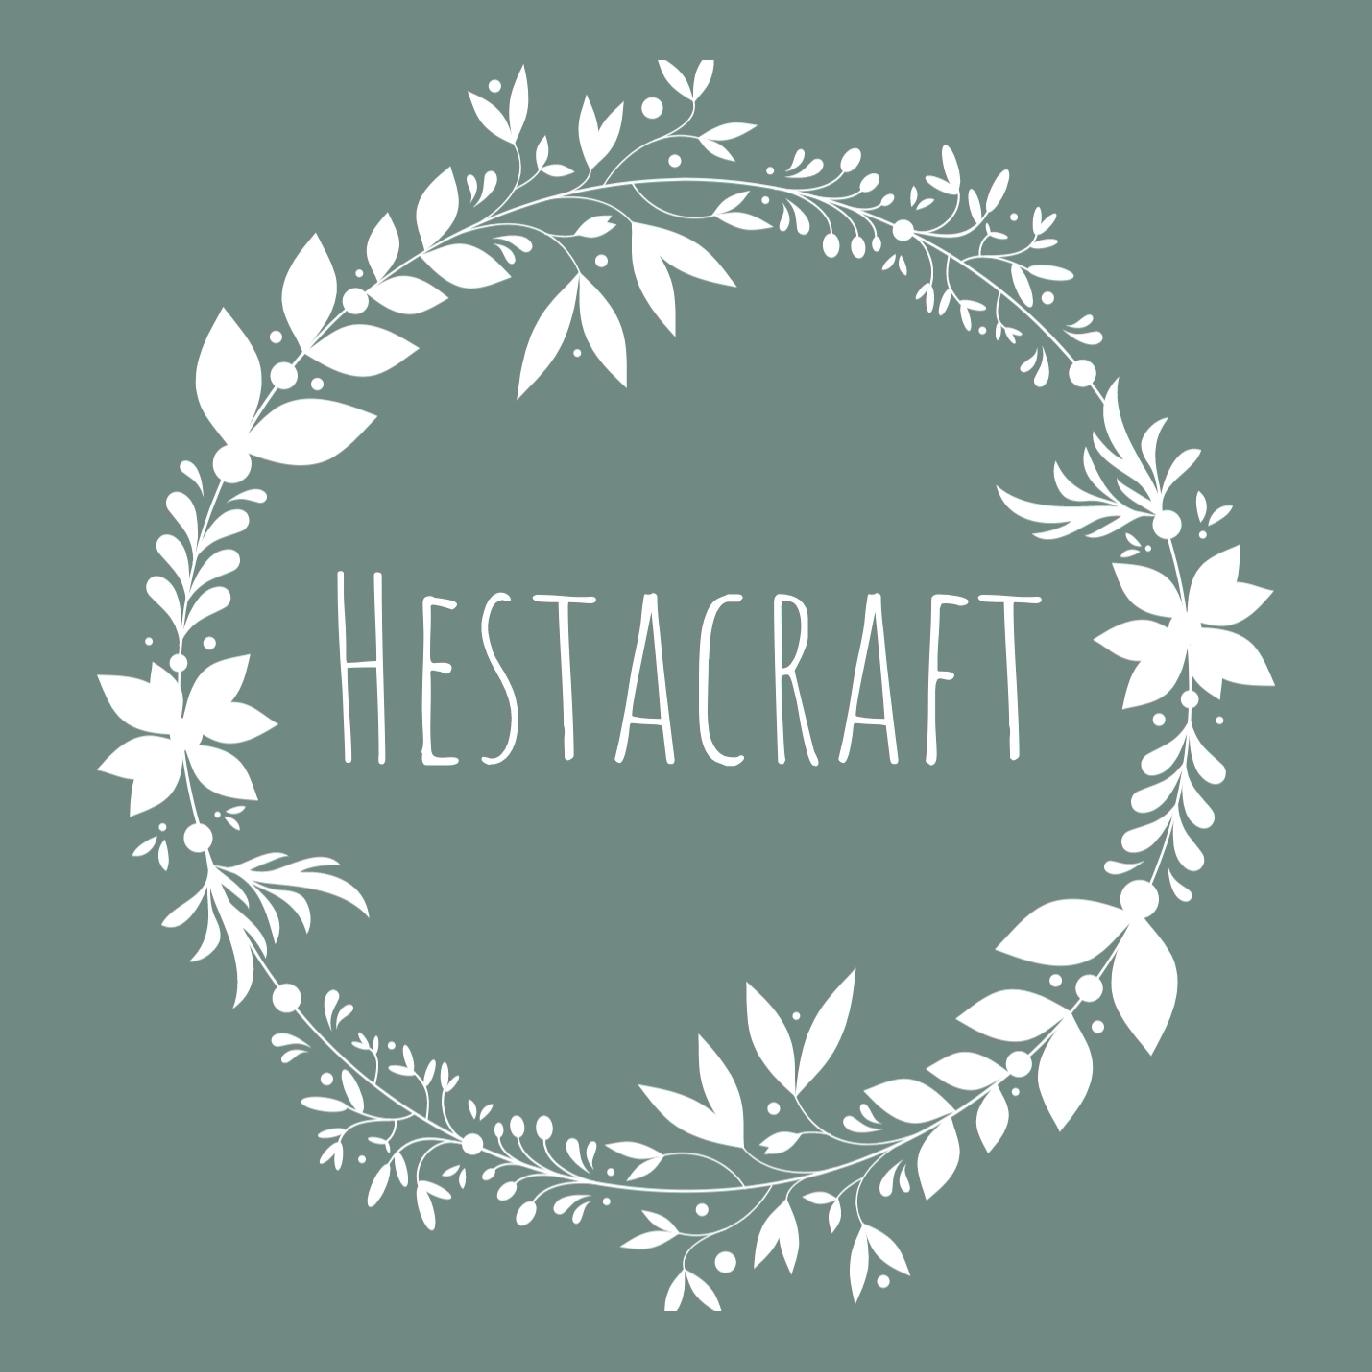 Hestacraft's images